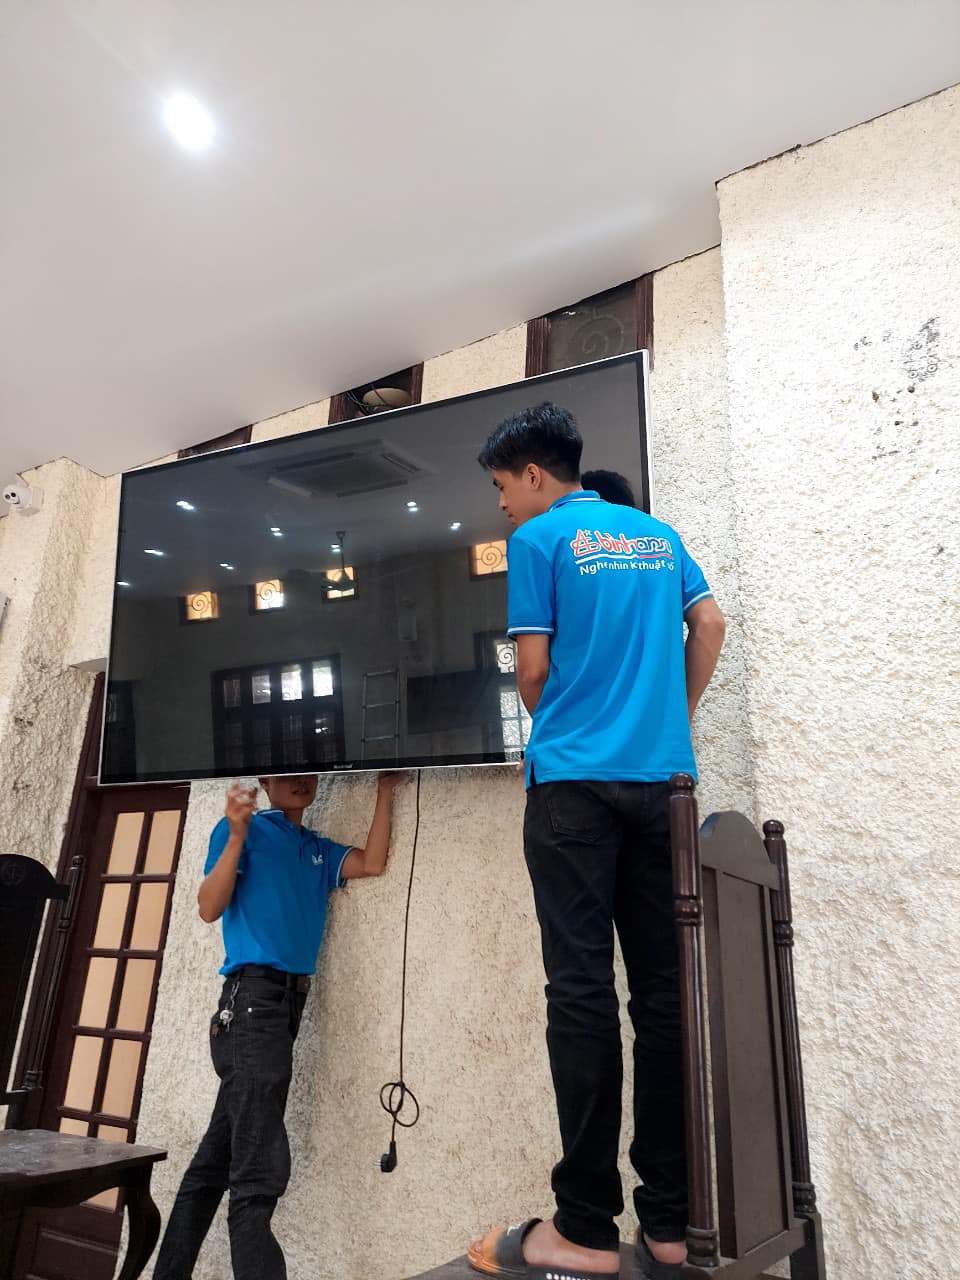 BAS Audio lắp đặt tivi Nashinal tại Tòa án nhân dân tỉnh Nam Định